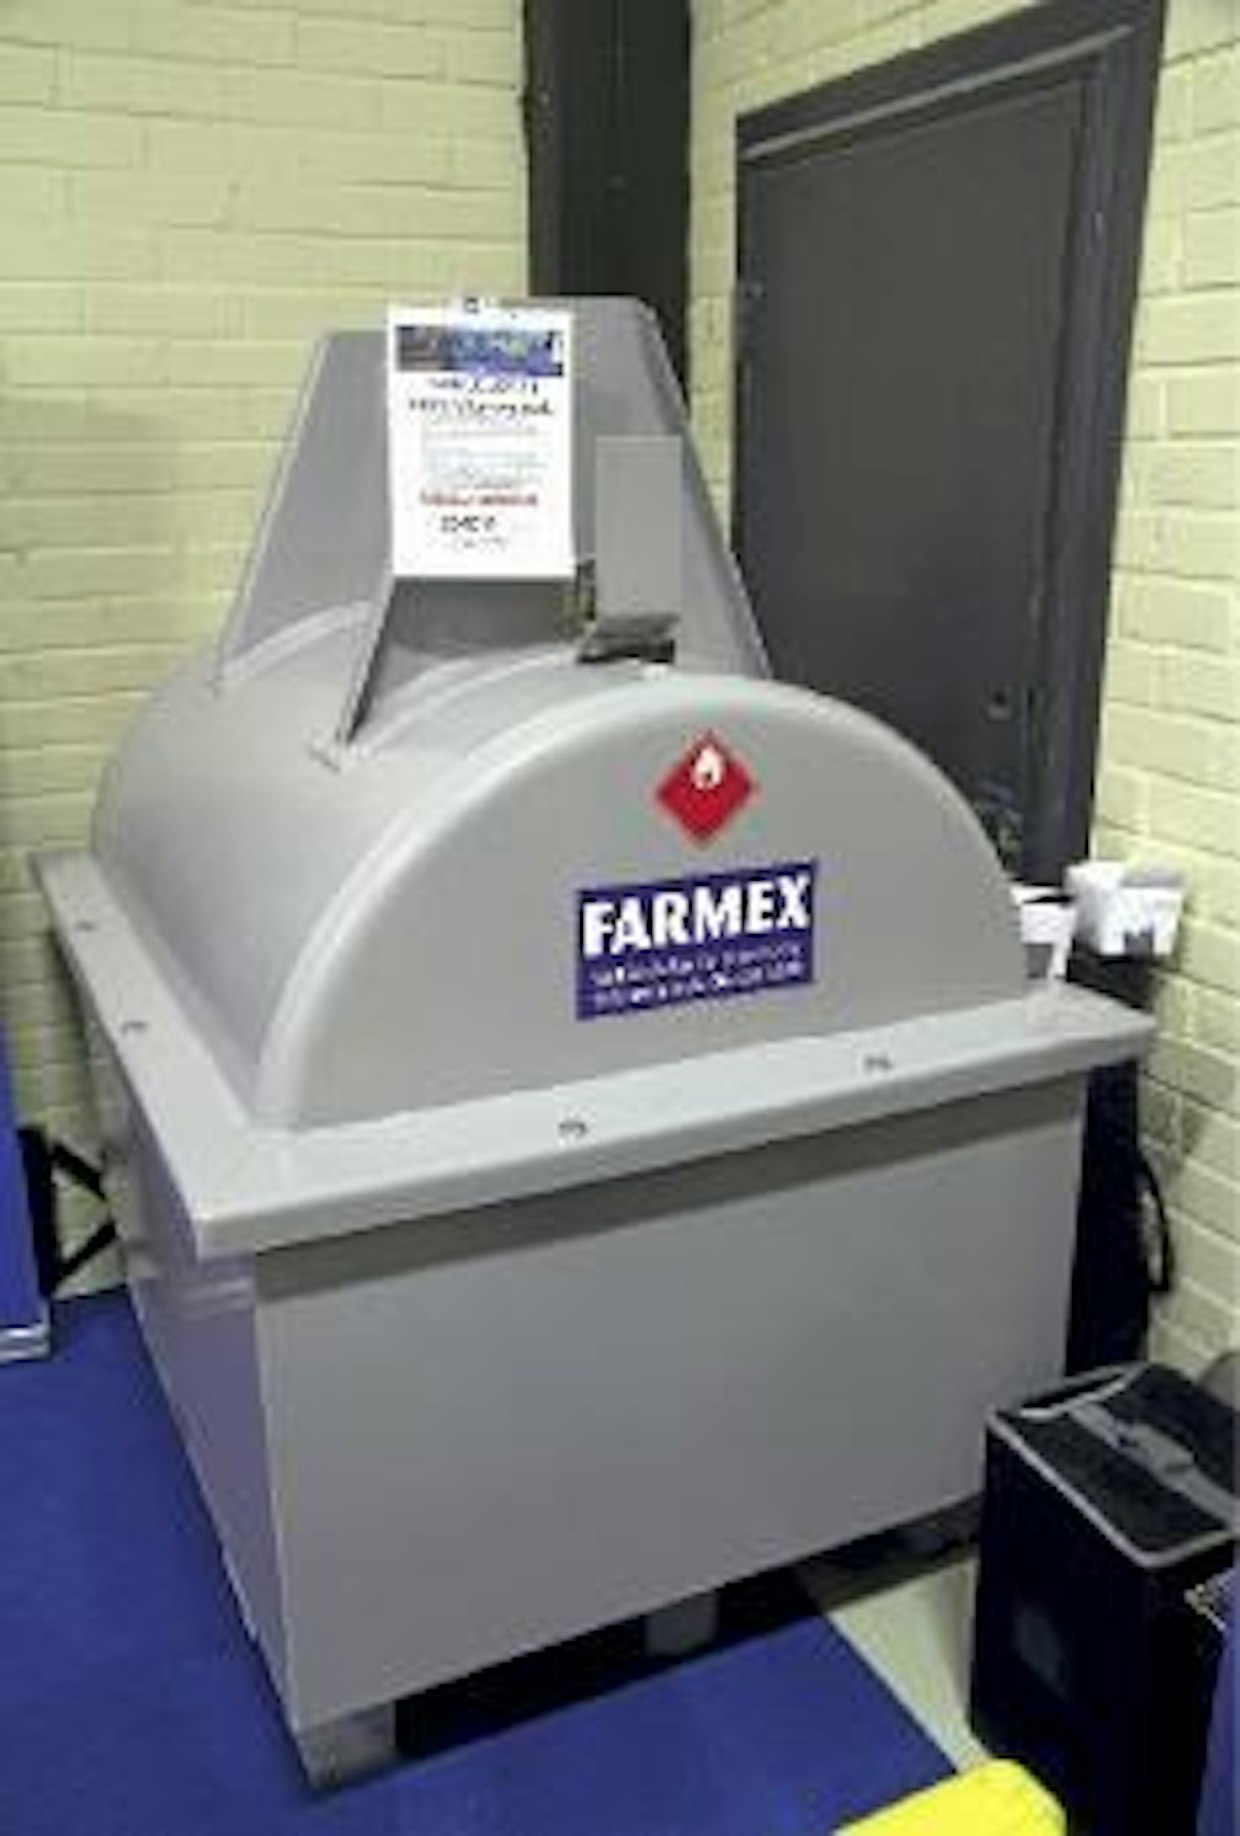 Valuma-altaalla varustetun Farmex Lavetti -säiliön tilavuus on 1 000 litraa. Säiliössä on camlock-korkki, nostokahva, käsipumppuvalmius. Ainevahvuus on 4 mm. Verollinen hinta ilman toimituskuluja 2 265 euroa. Käsipumppuvarustuksesta veloitetaan 150 euron lisähinta. (PJ)